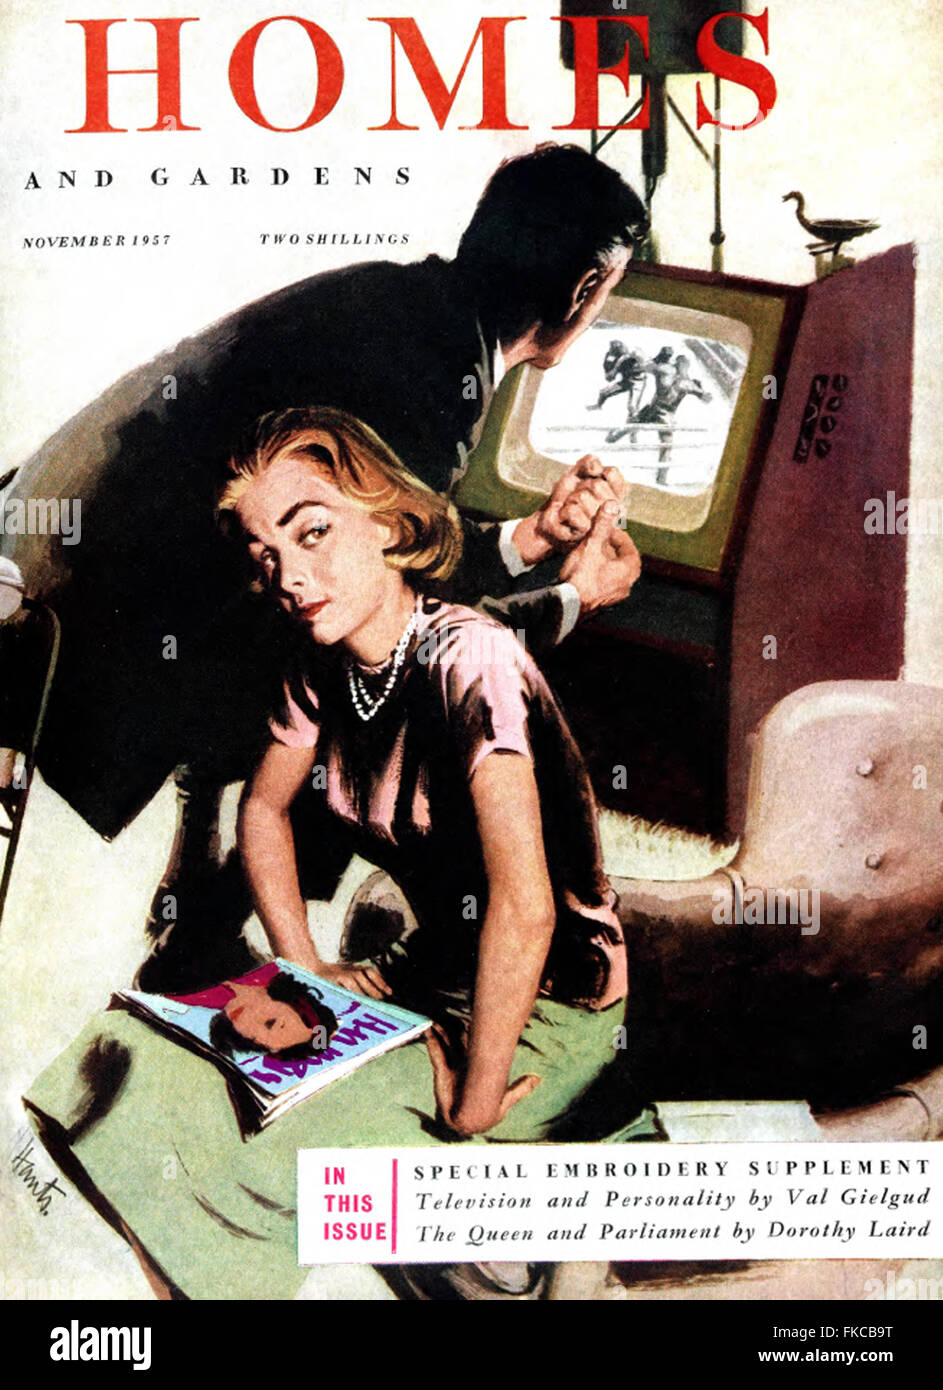 1950er Jahre britischen Haushalten und Gärten Magazine Cover Stockfoto